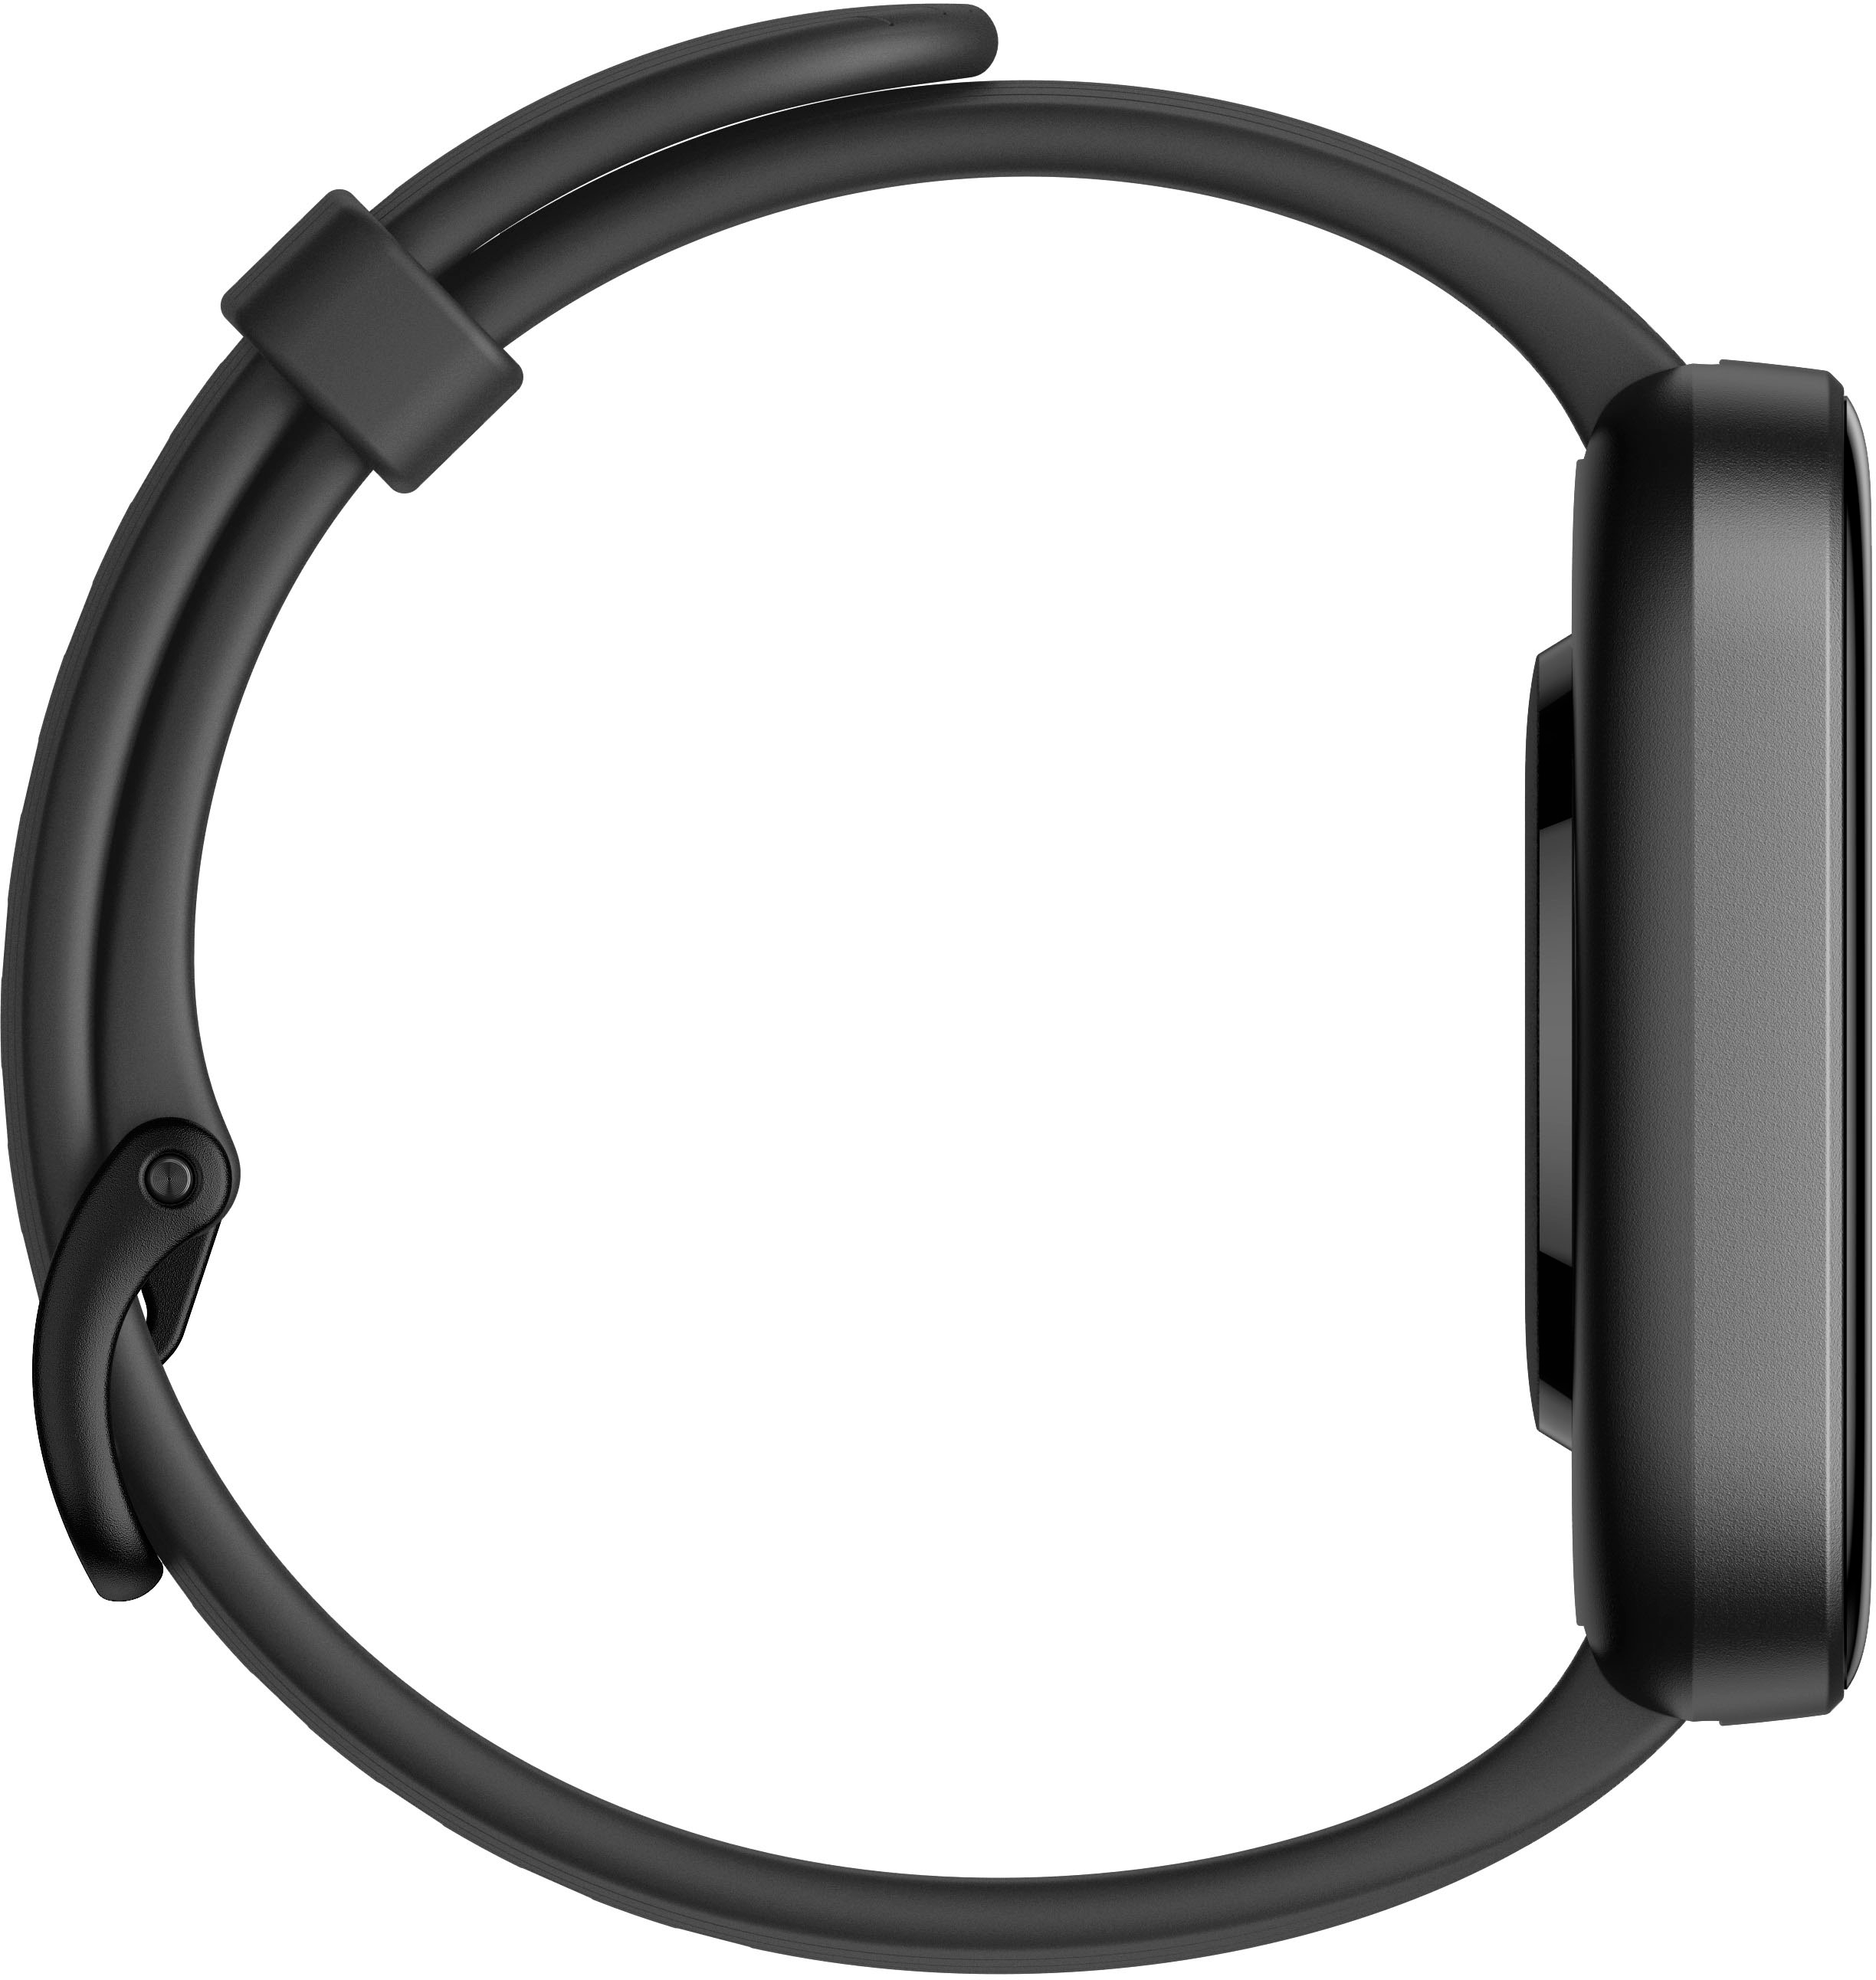 Amazfit Bip 3 Pro Smartwatch 42.9mm Polycarbonate Plastic Black